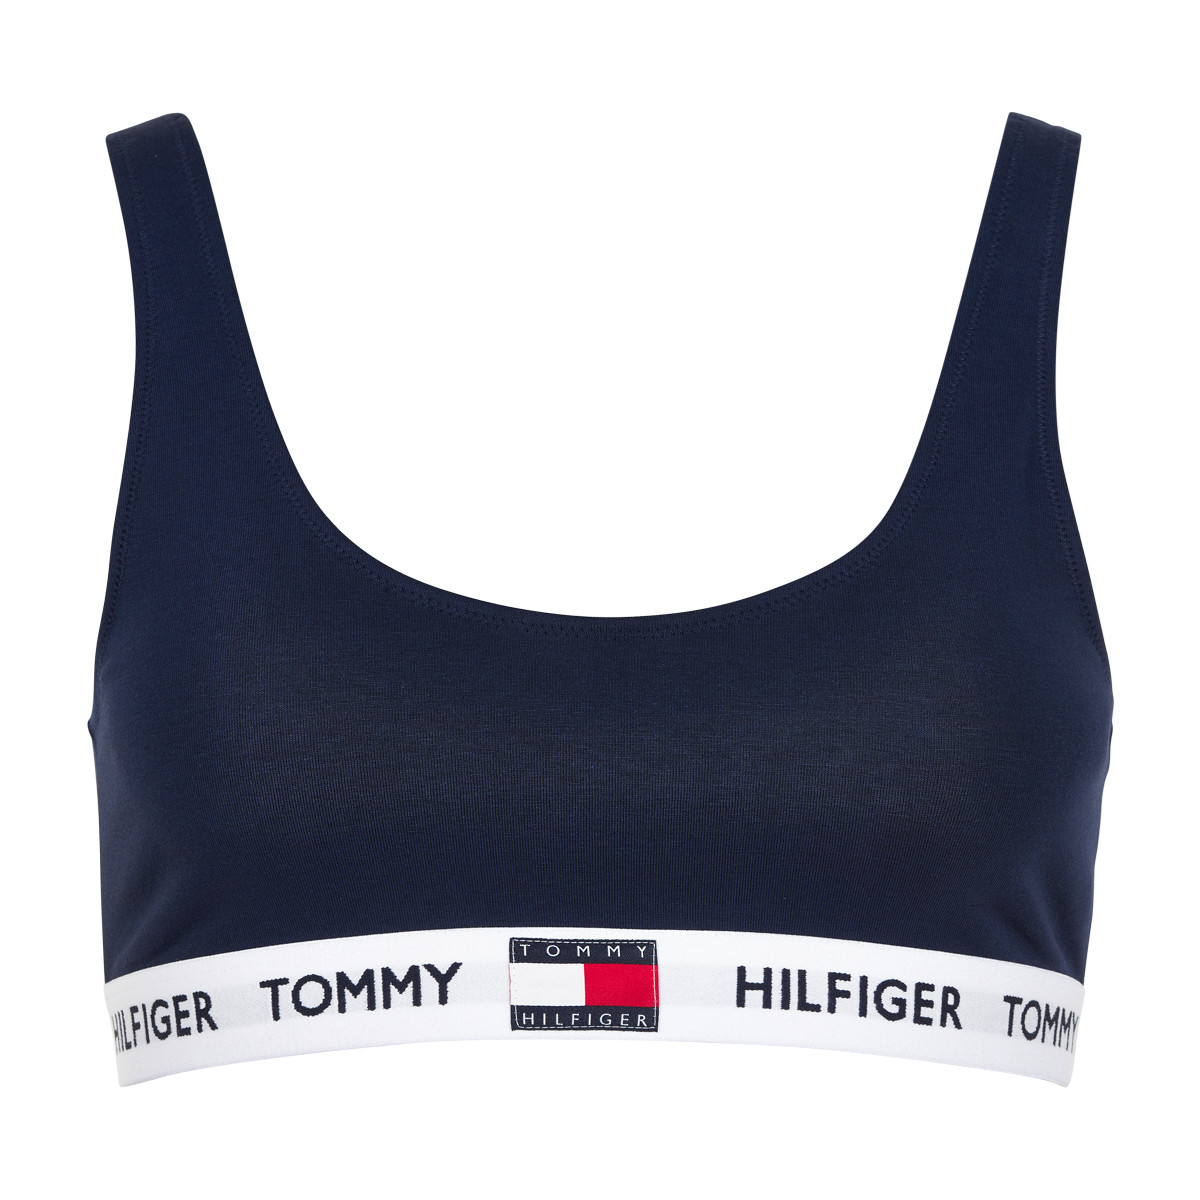 8: Tommy Hilfiger Bralette Top , Størrelse: S, Farve: Blå, Dame